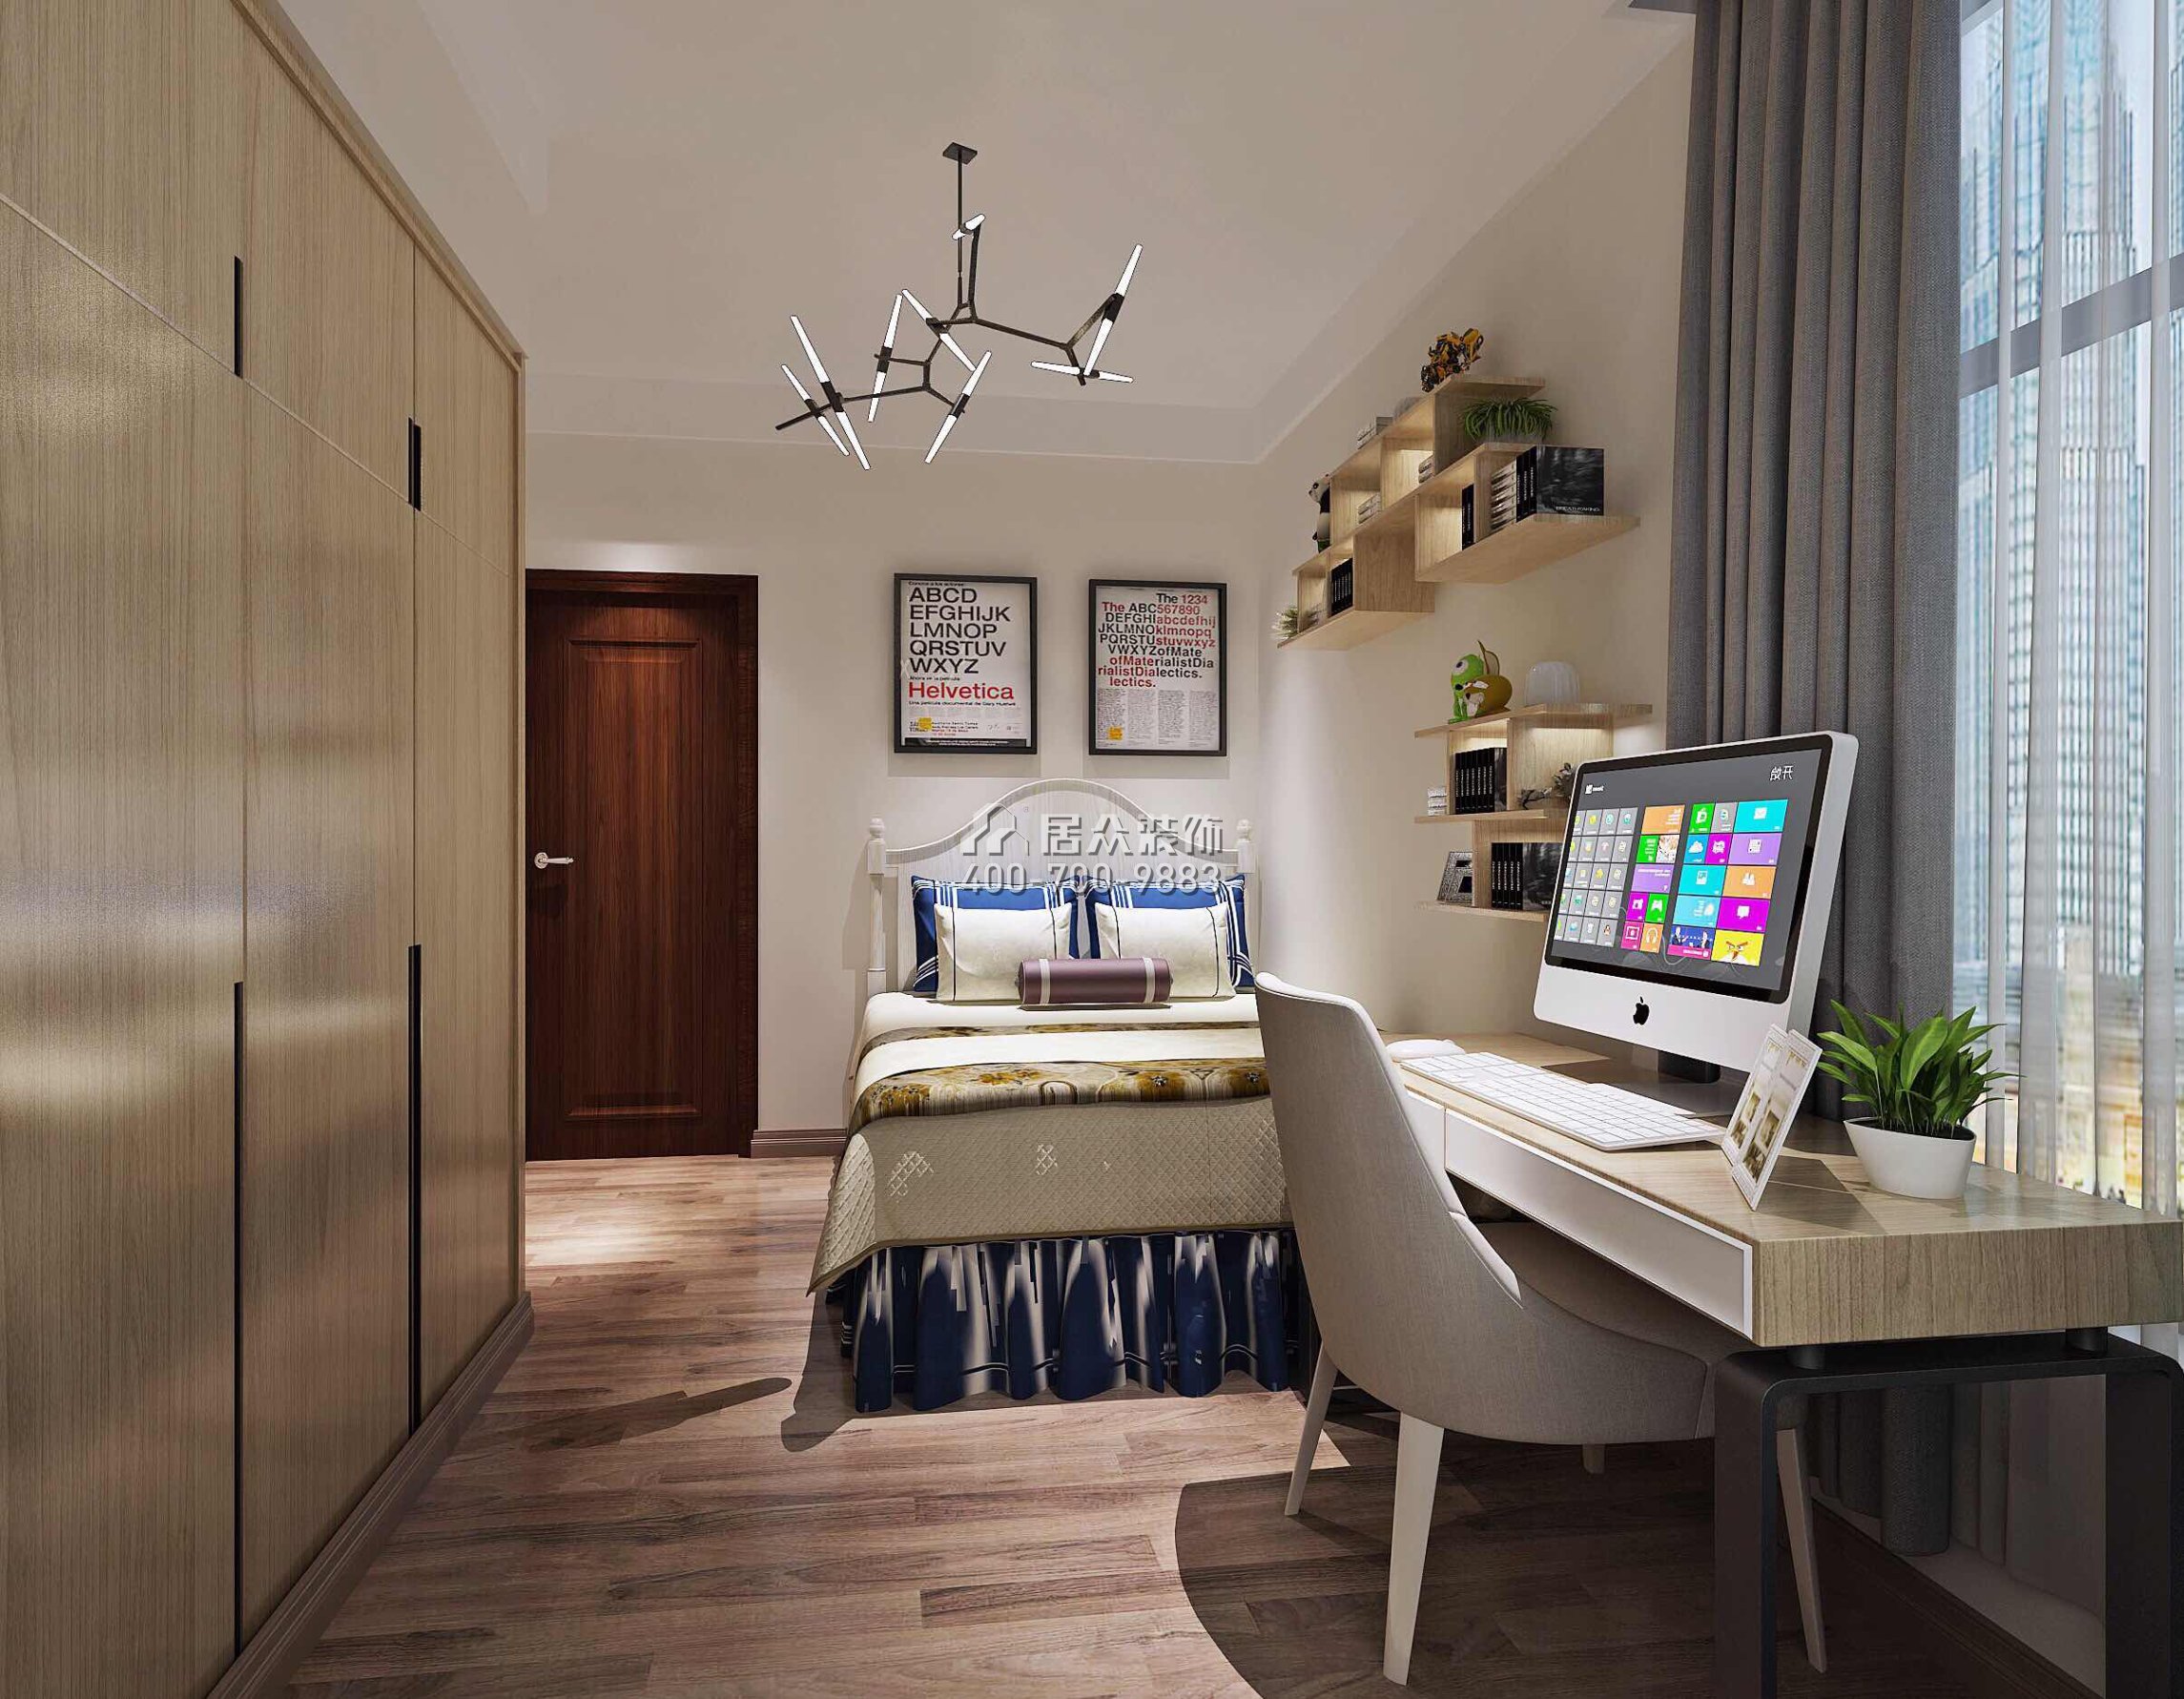 招商臻园170平方米中式风格平层户型卧室装修效果图